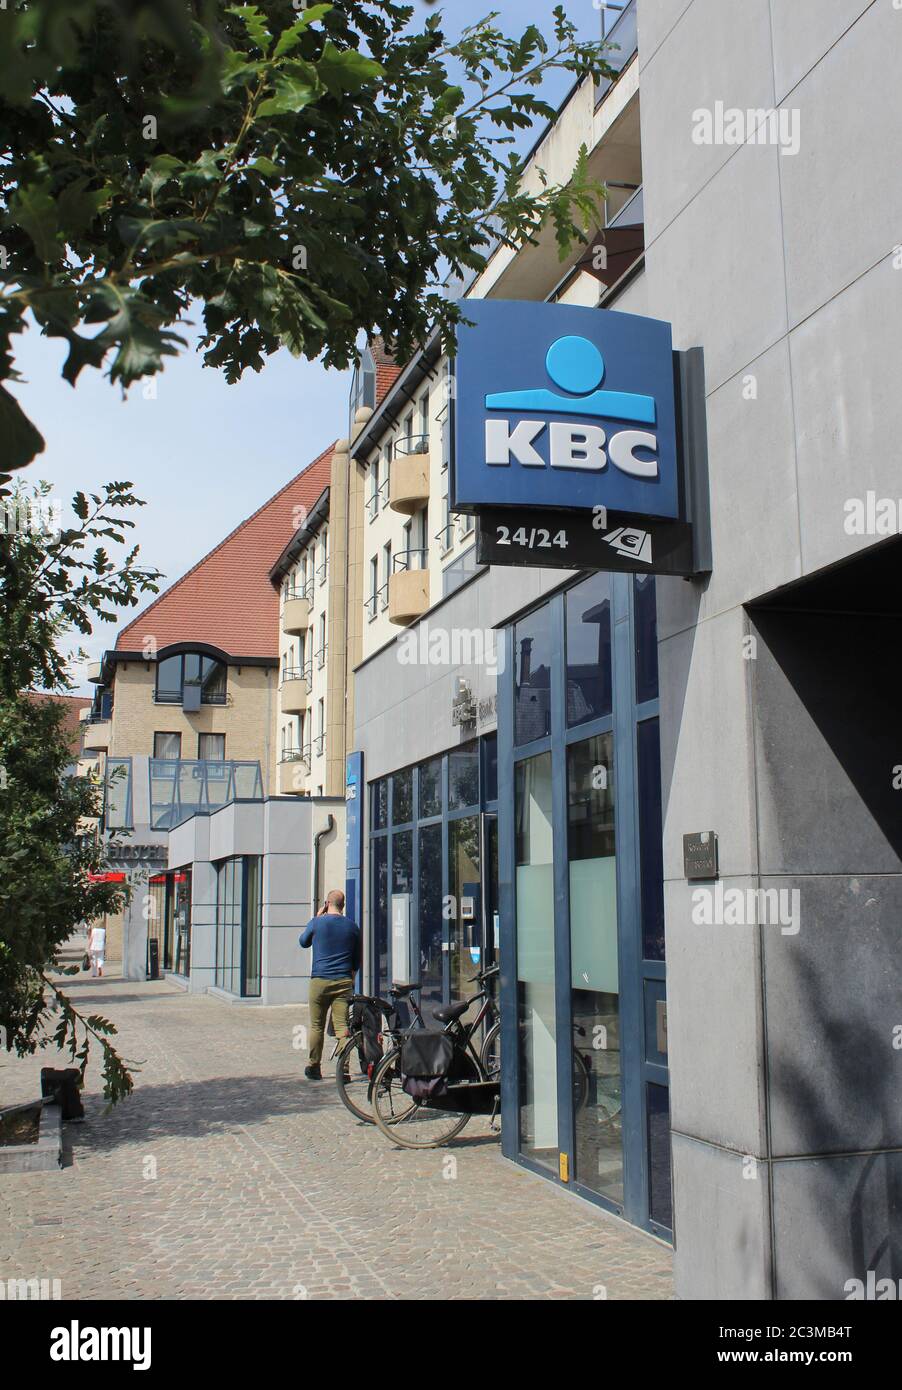 AALST, BELGIQUE, 12 JUIN 2020 : vue extérieure d'une succursale de la KBC Bank en Belgique. KBC Group N.V. est un ba multi-canal universel belge Banque D'Images